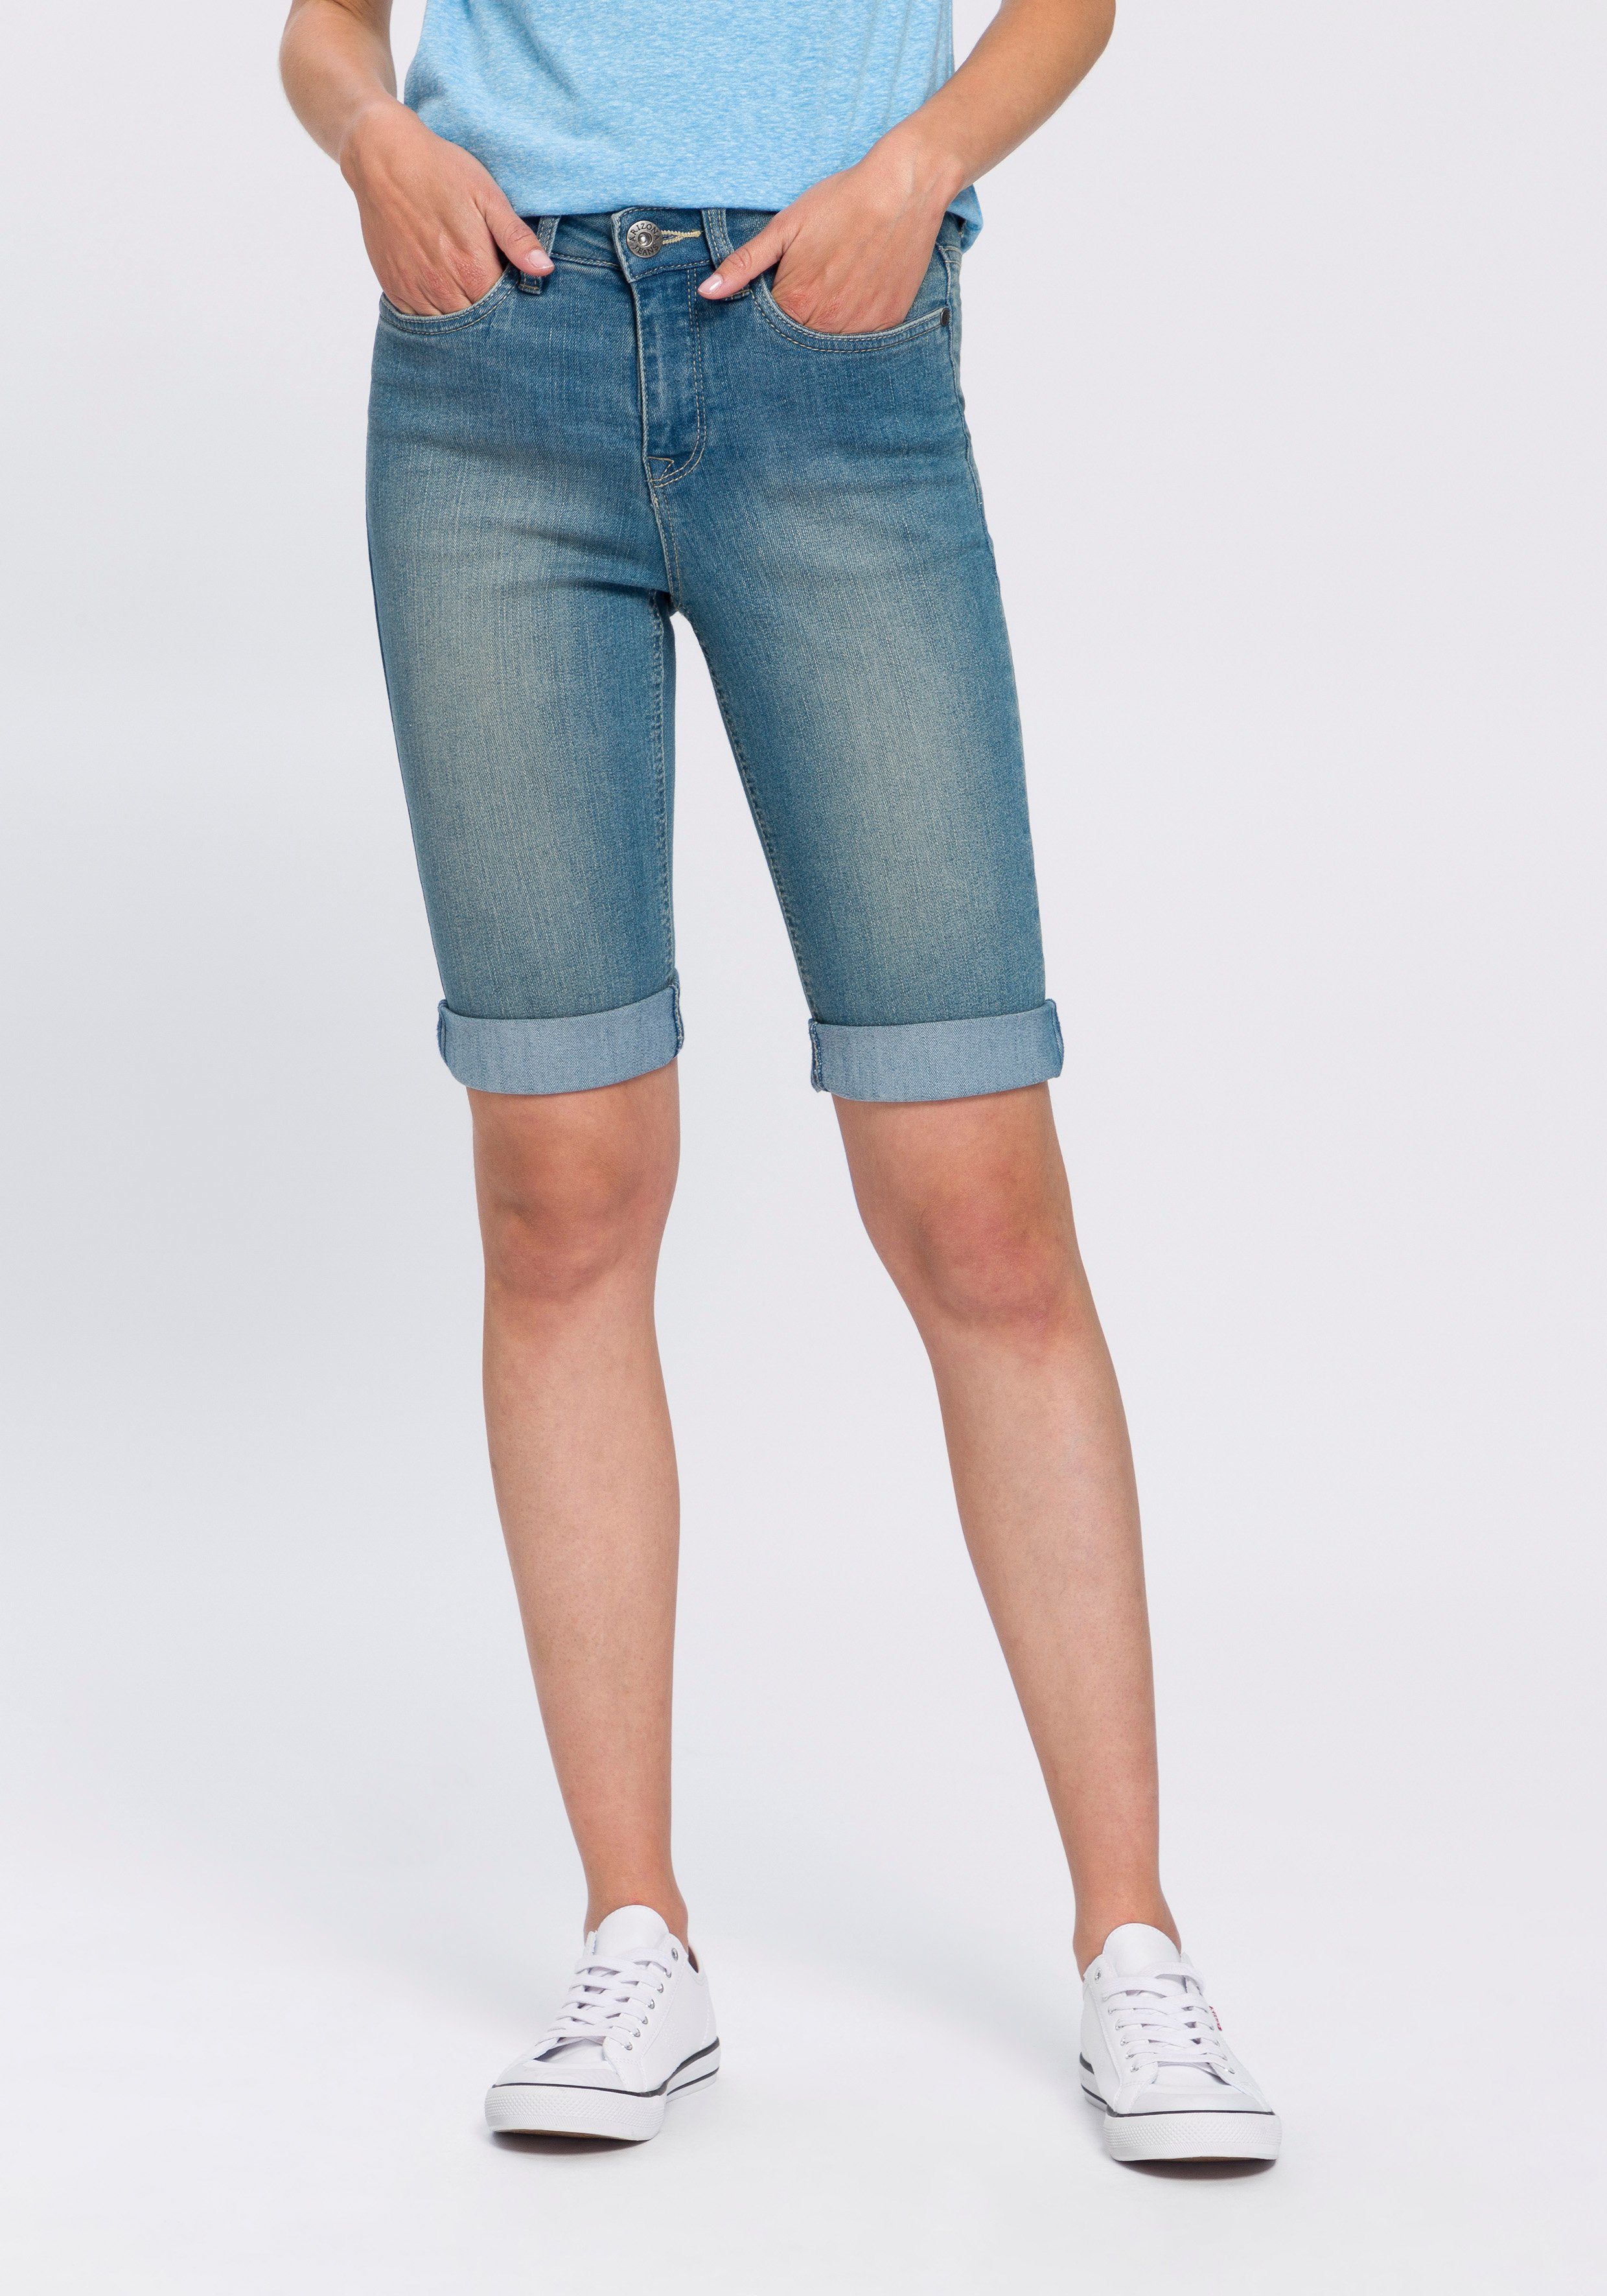 Arizona Jeansbermudas High Waist, Saum individuell krempelbar online kaufen  | OTTO